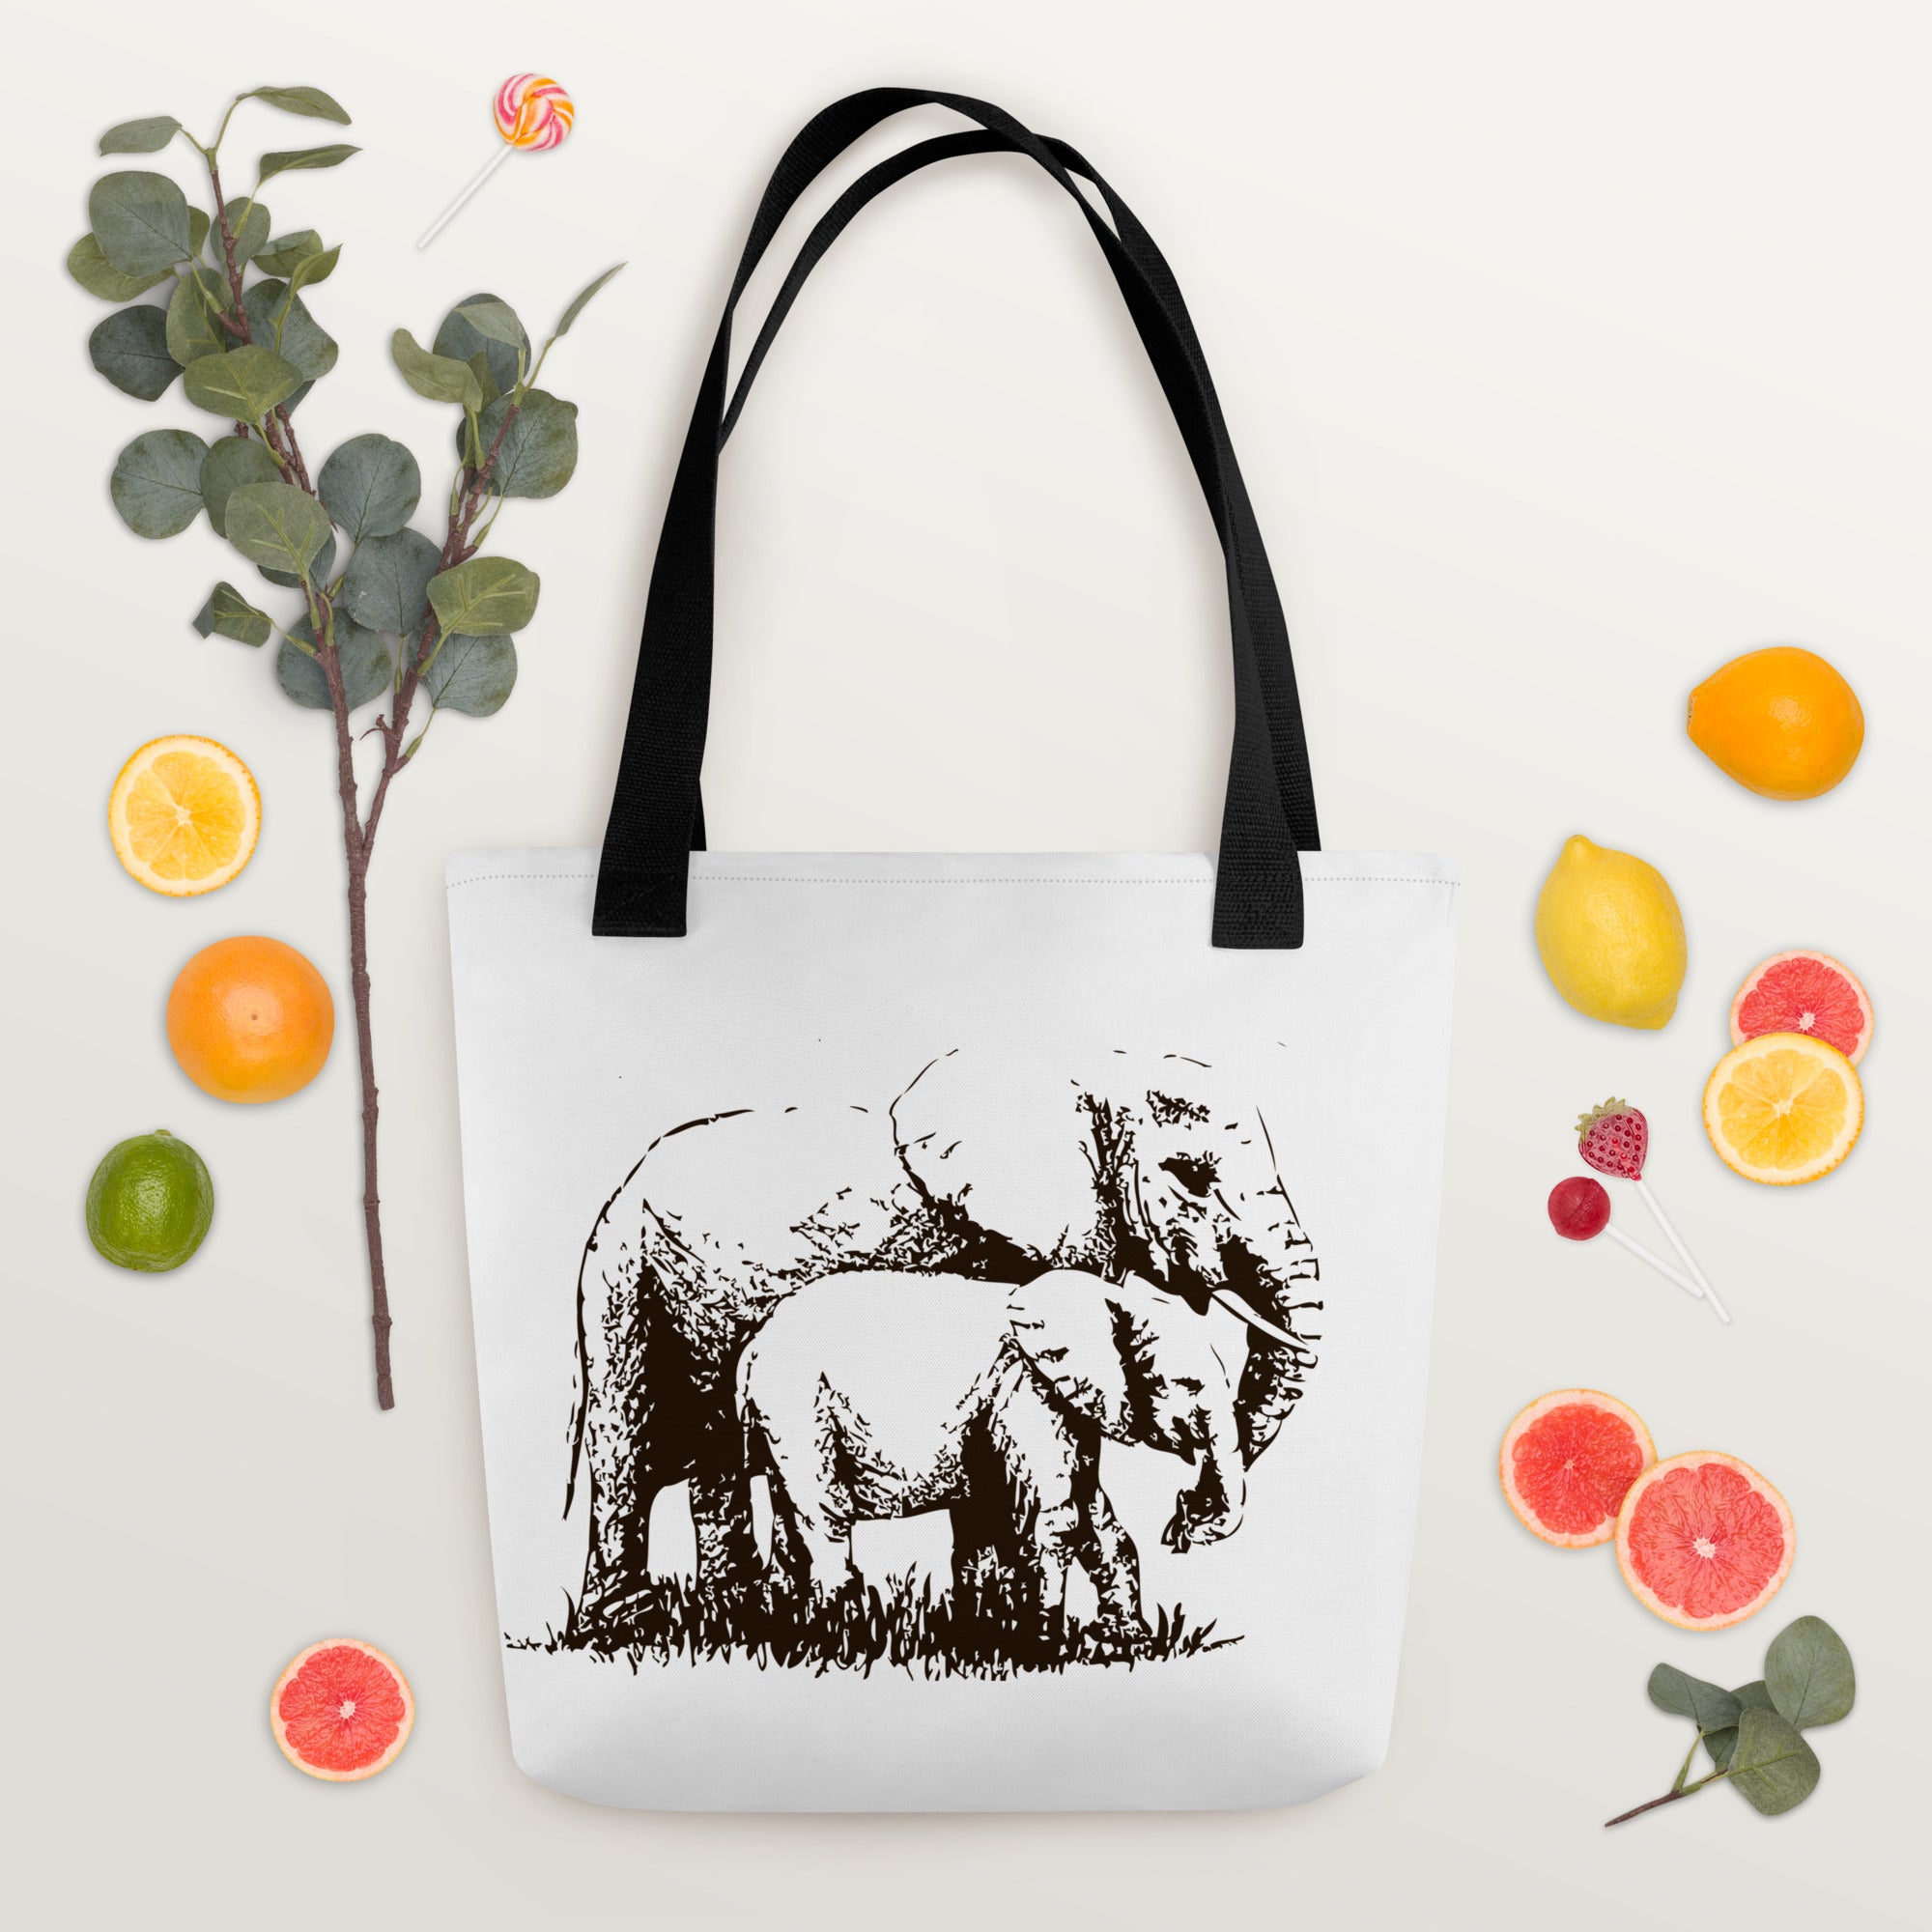 Tote bag- Elephants Mono